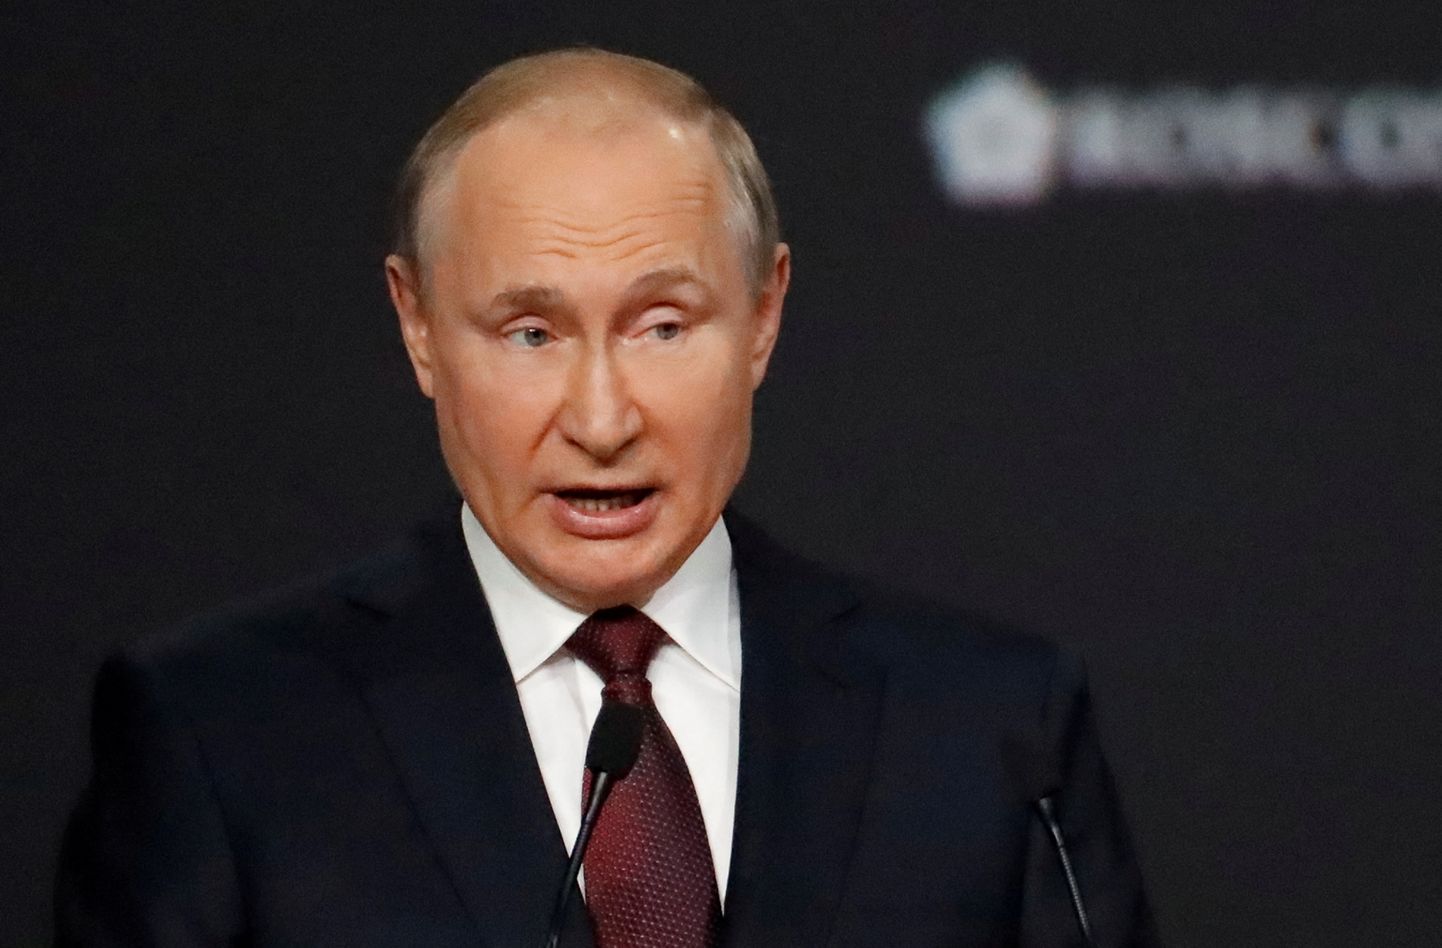 Venemaa president Vladimir Putin kõnelemas 4. juunil 2021 Peterburis rahvusvahelisel majandusfoorumil. Ukraina anastussõja ja lääne sanktsioonide tõttu on Venemaa majandus kriisis